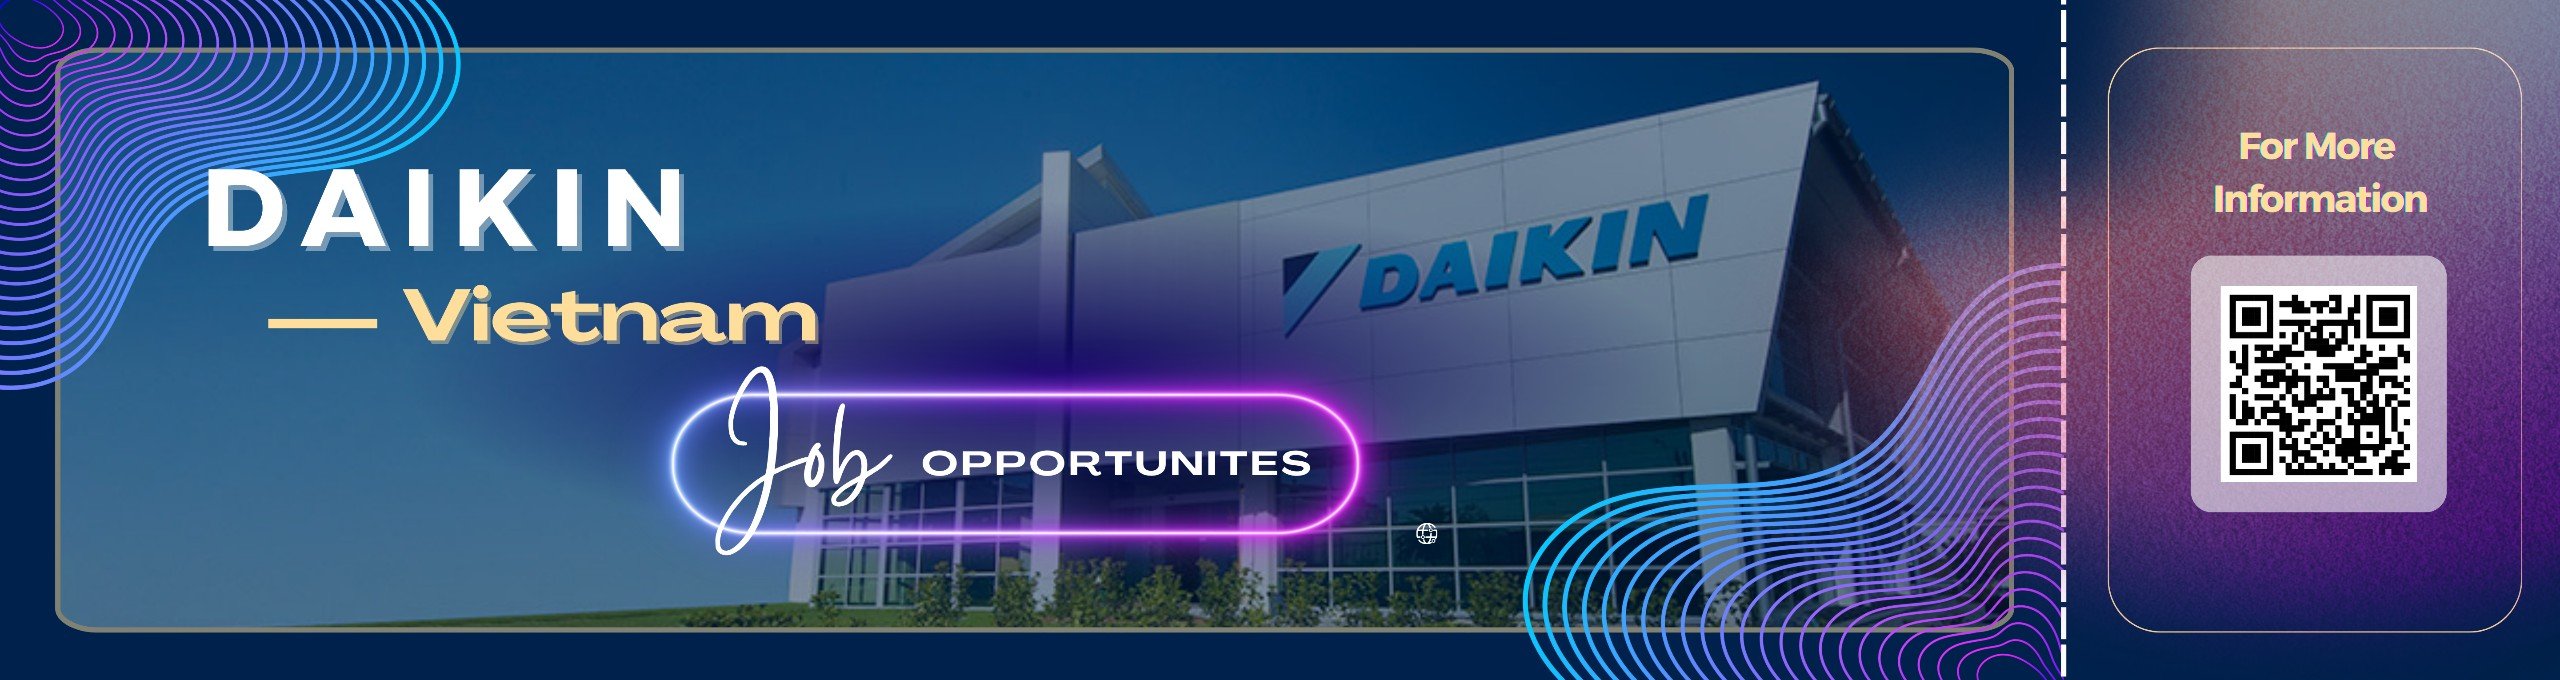 
                                                            Open jobs at Daikin Vietnam
                                                    